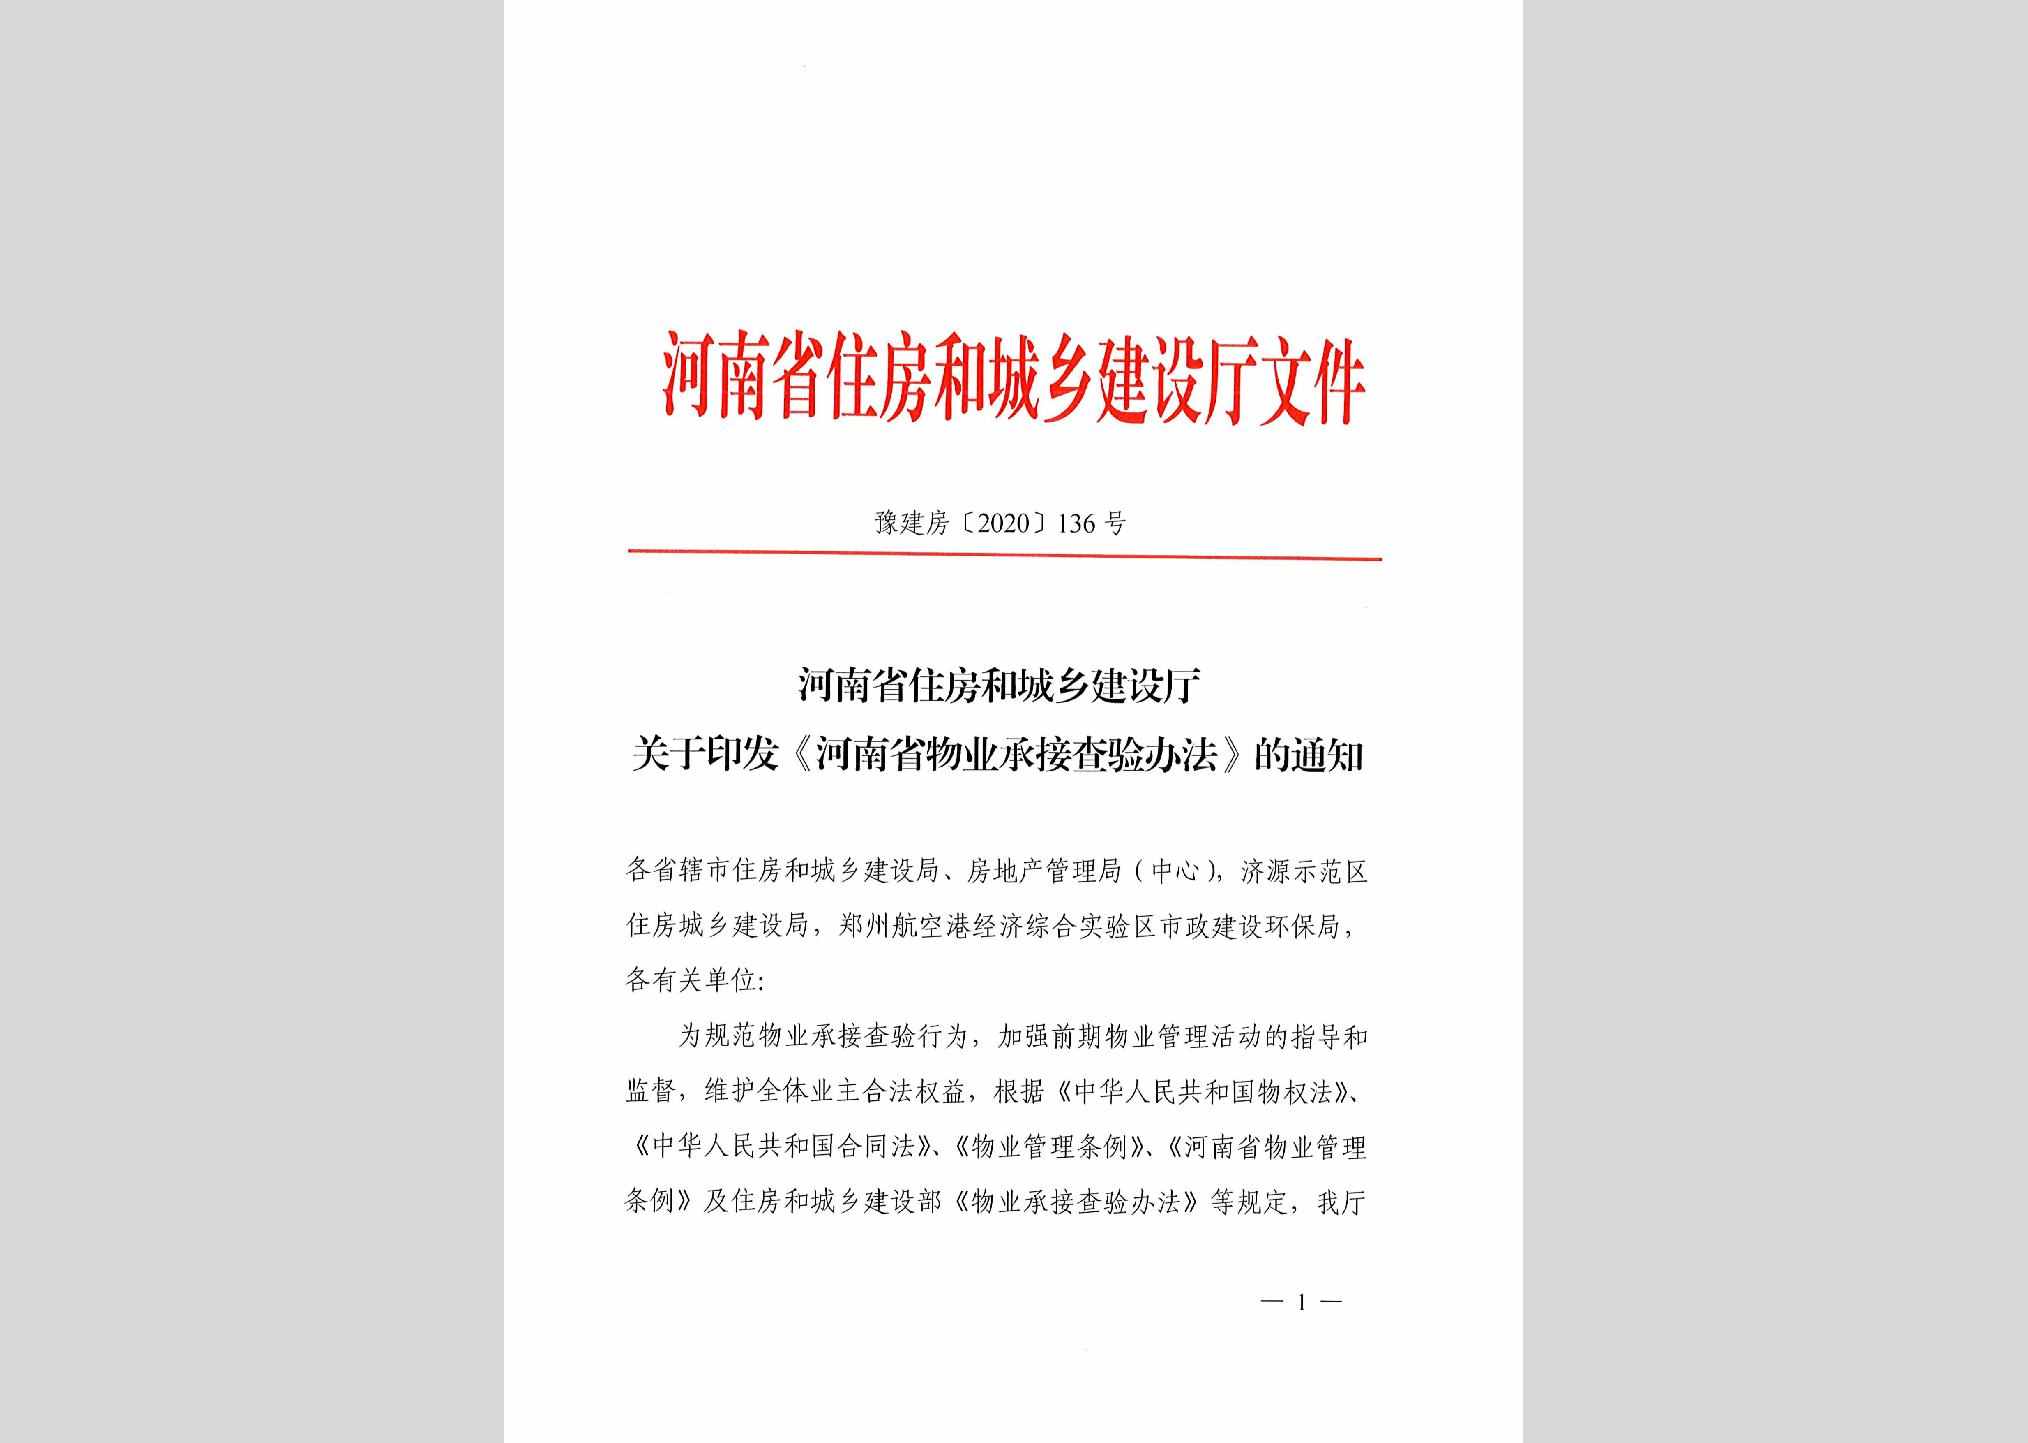 豫建房[2020]136号：河南省住房和城乡建设厅关于印发《河南省物业承接查验办法》的通知